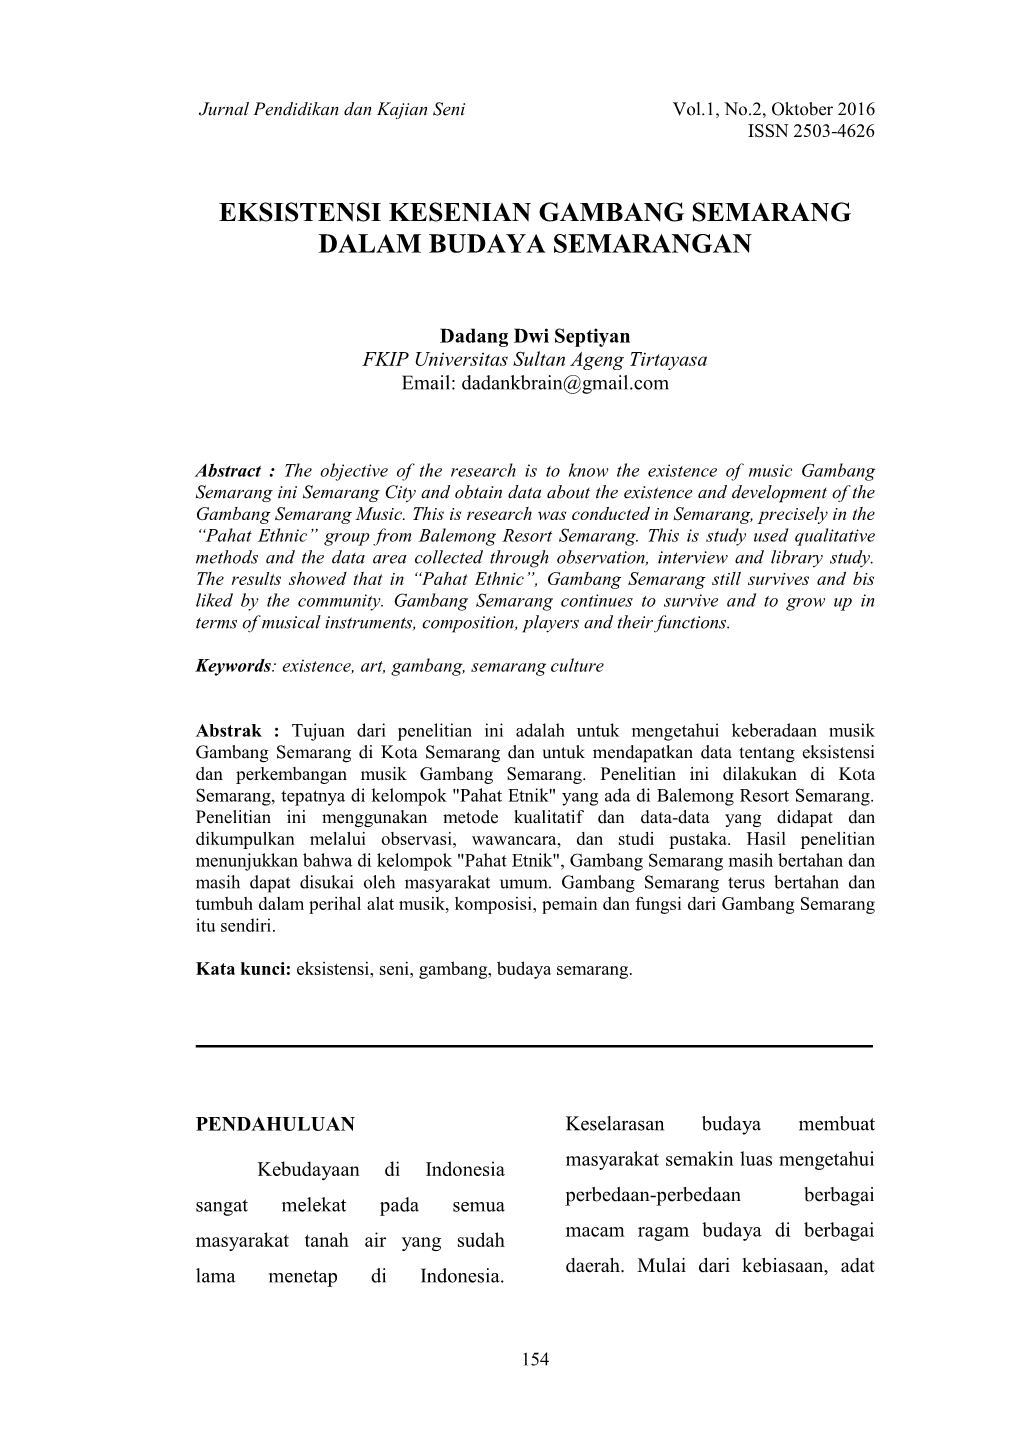 Eksistensi Kesenian Gambang Semarang Dalam Budaya Semarangan